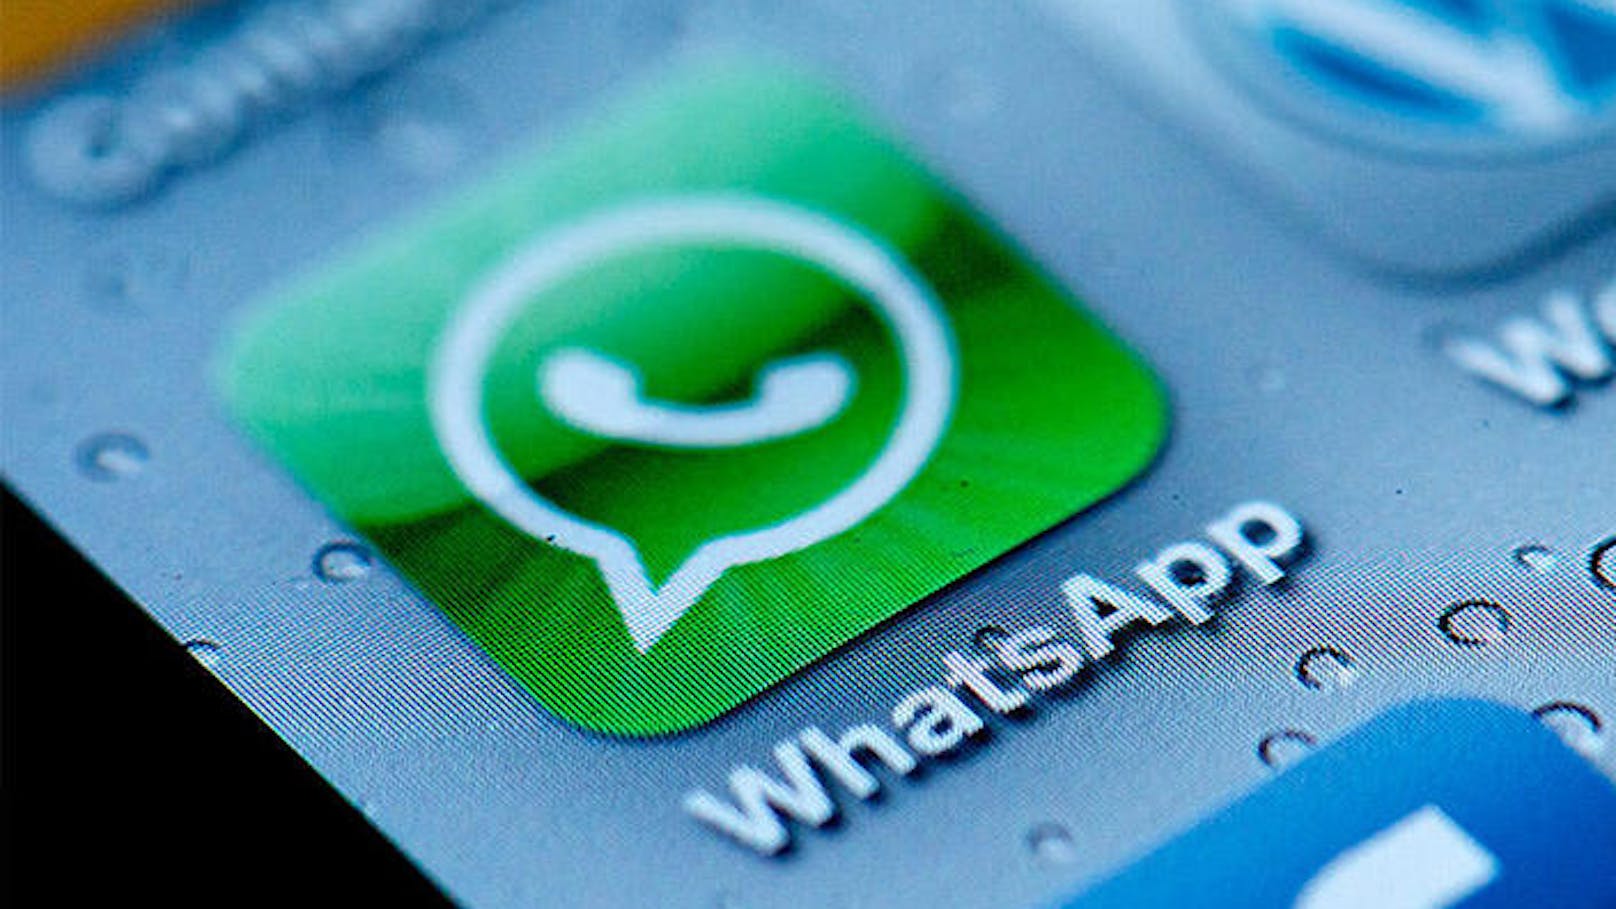 Auch verschlüsselte WhatsApp-Nachrichten sind demnach nicht so sicher wie gedacht. Wer eine Internetadresse in eine Konversation reinkopiert, ist nicht davon betroffen. WhatsApp will die Sicherheitslücke baldmöglichst schließen.